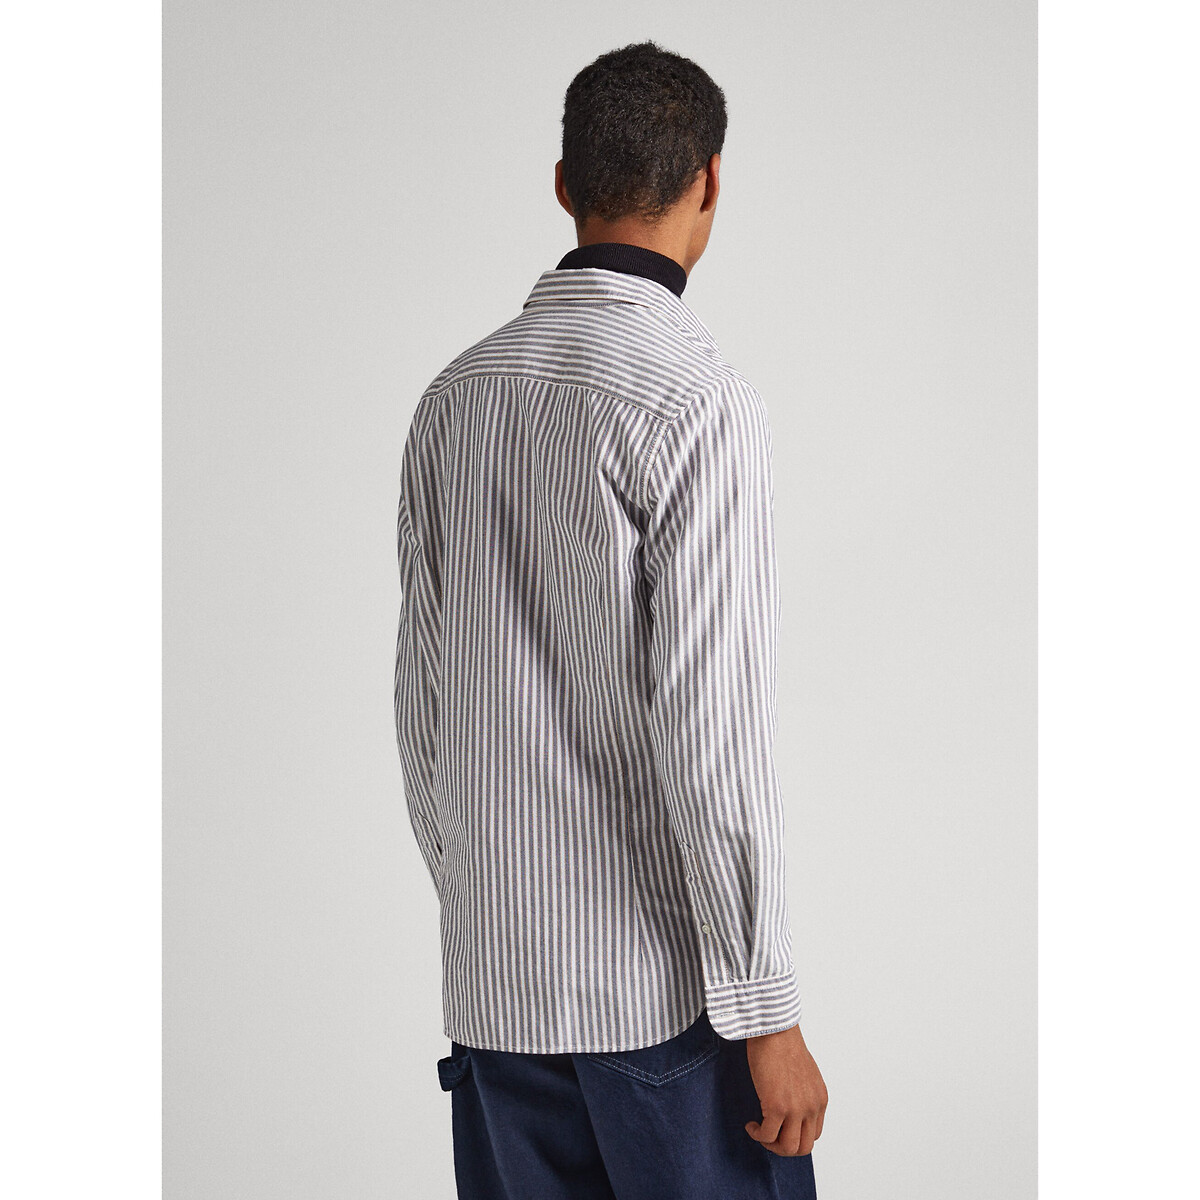 Рубашка Прямого покроя с длинными рукавами L белый LaRedoute, размер L - фото 4